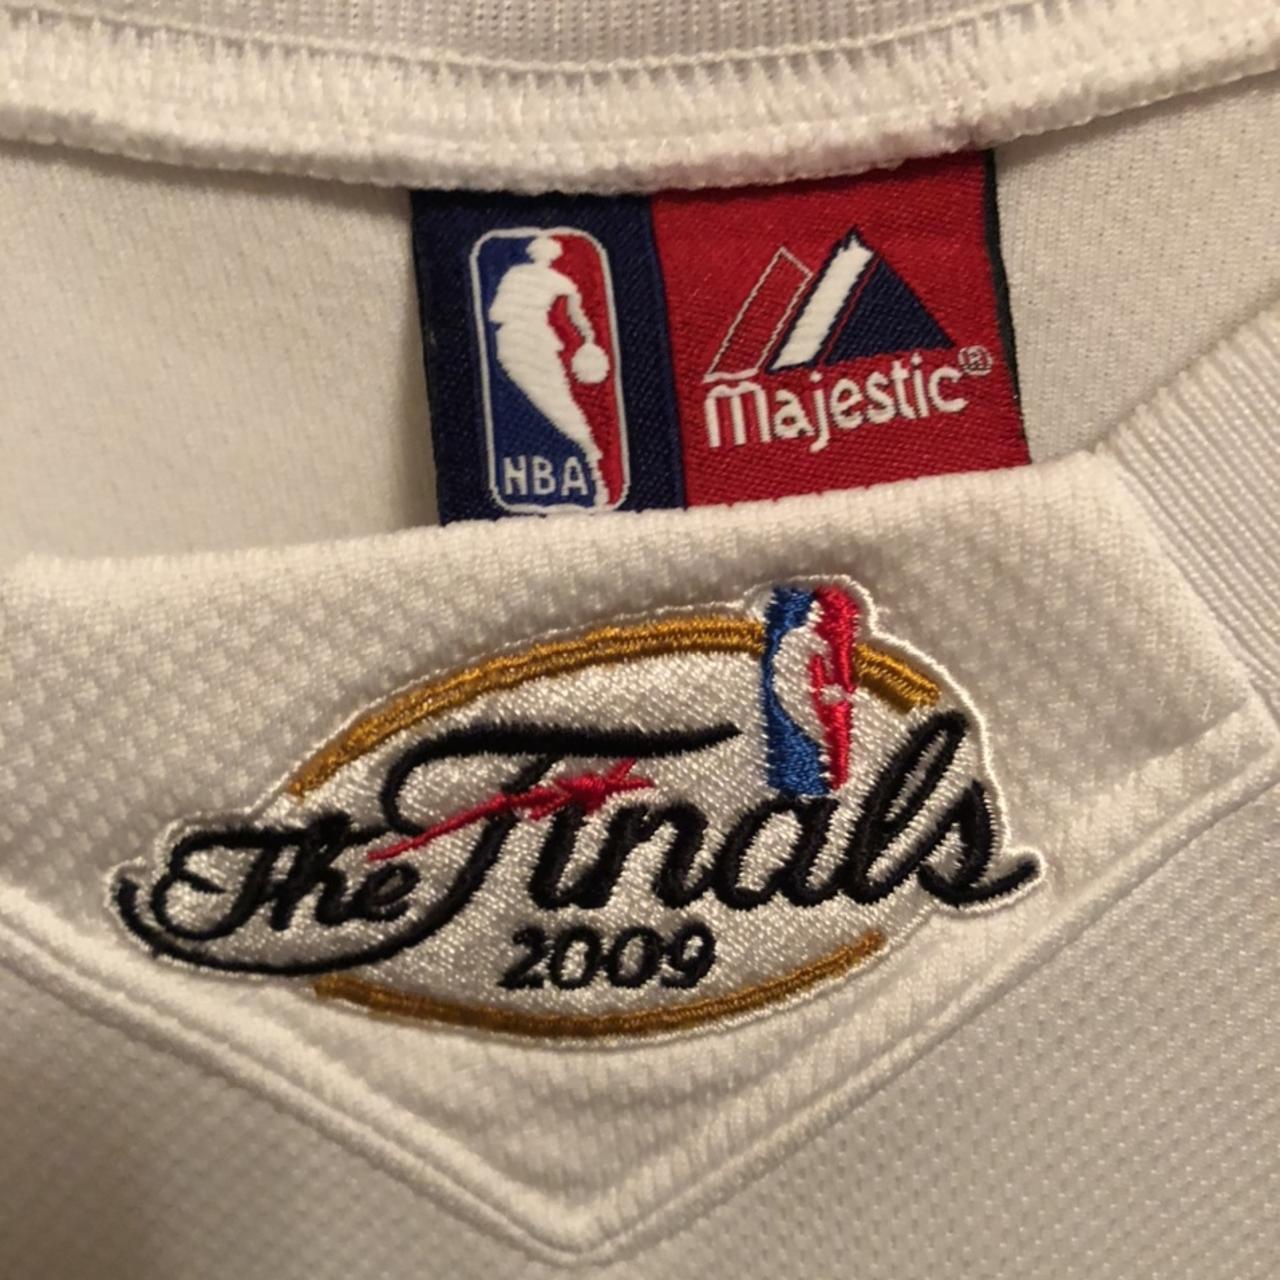 2009 nba finals jersey